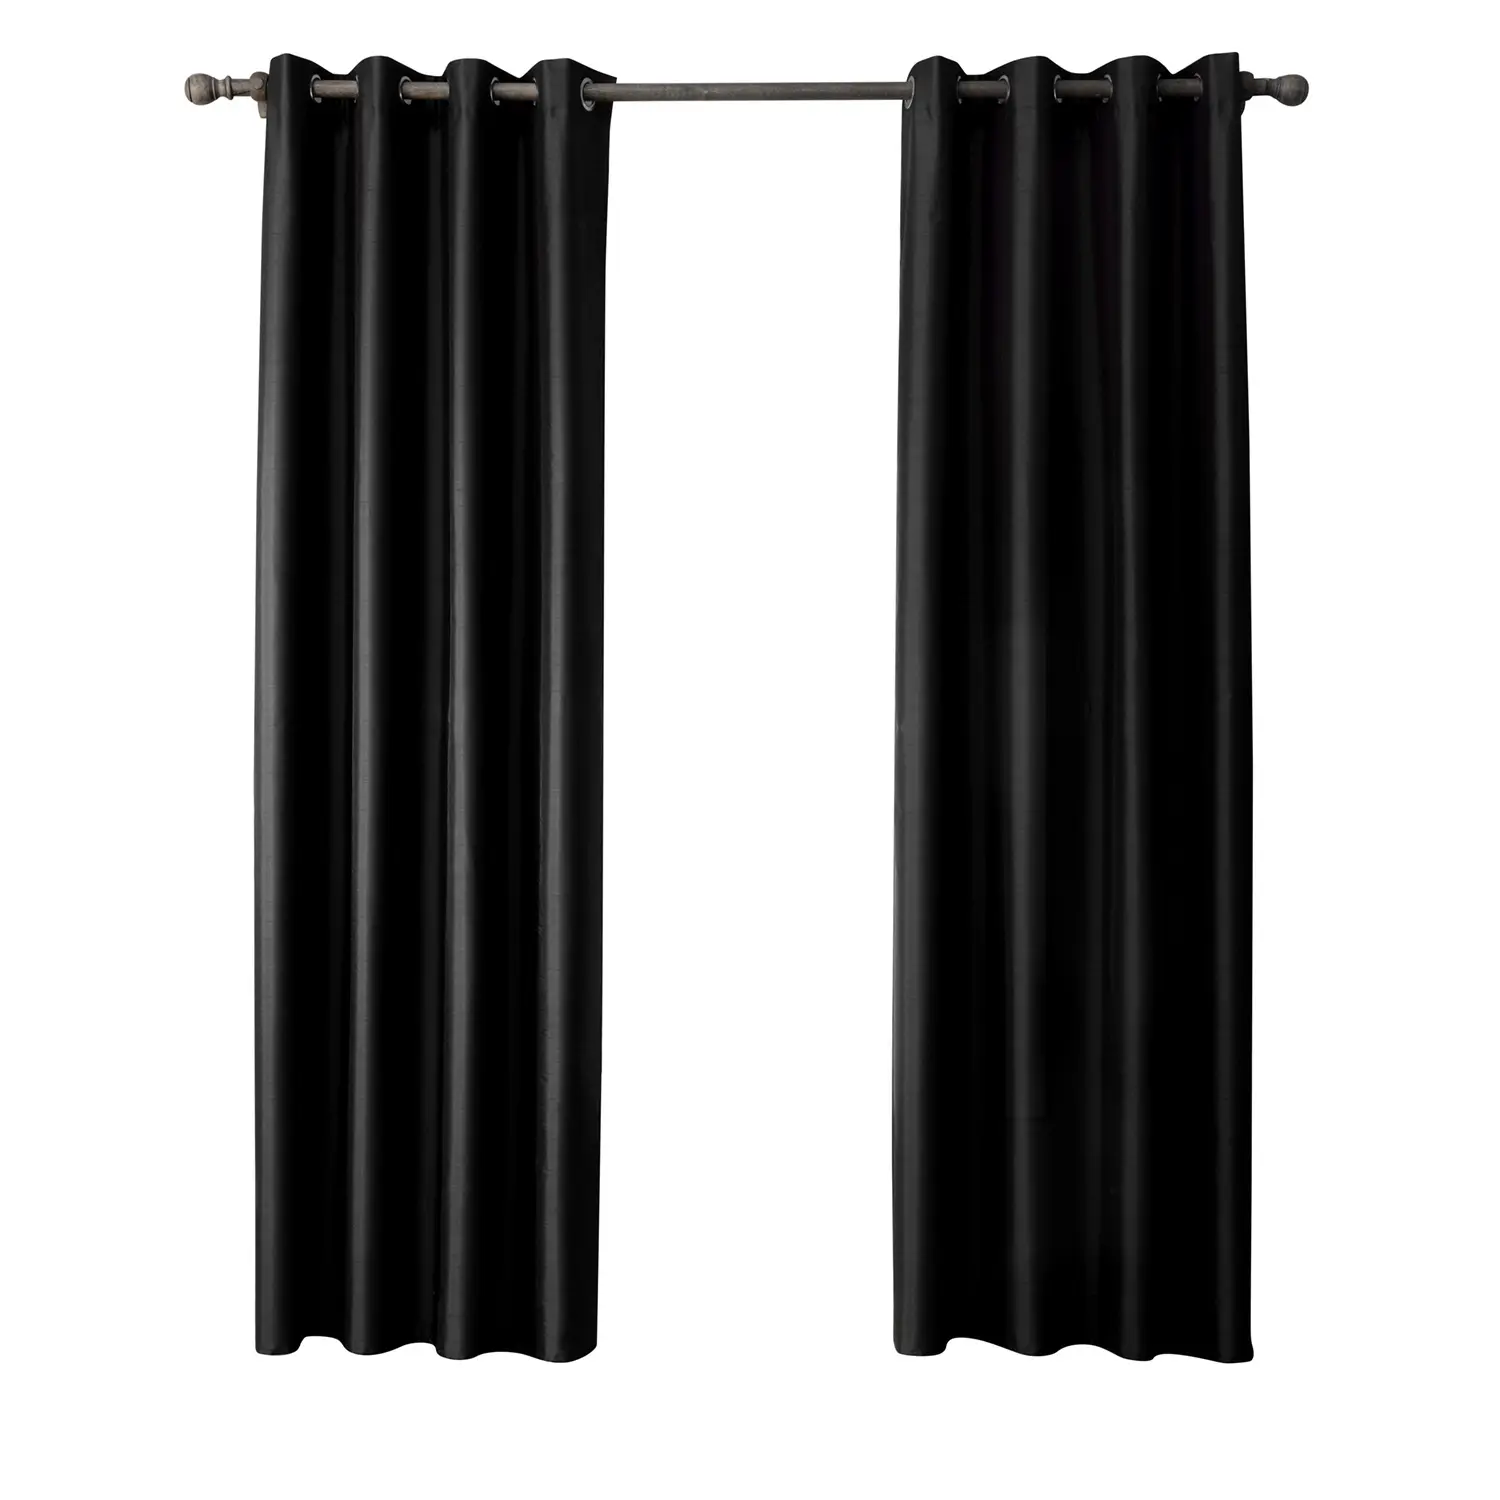 แสงหรูหราผ้าม่านทึบสูงเลียนแบบพระราชวังคู่พิมพ์ห้องนอนสีดำผ้าม่านสีดำสีดำและสีขาวผ้าม่านผ้า